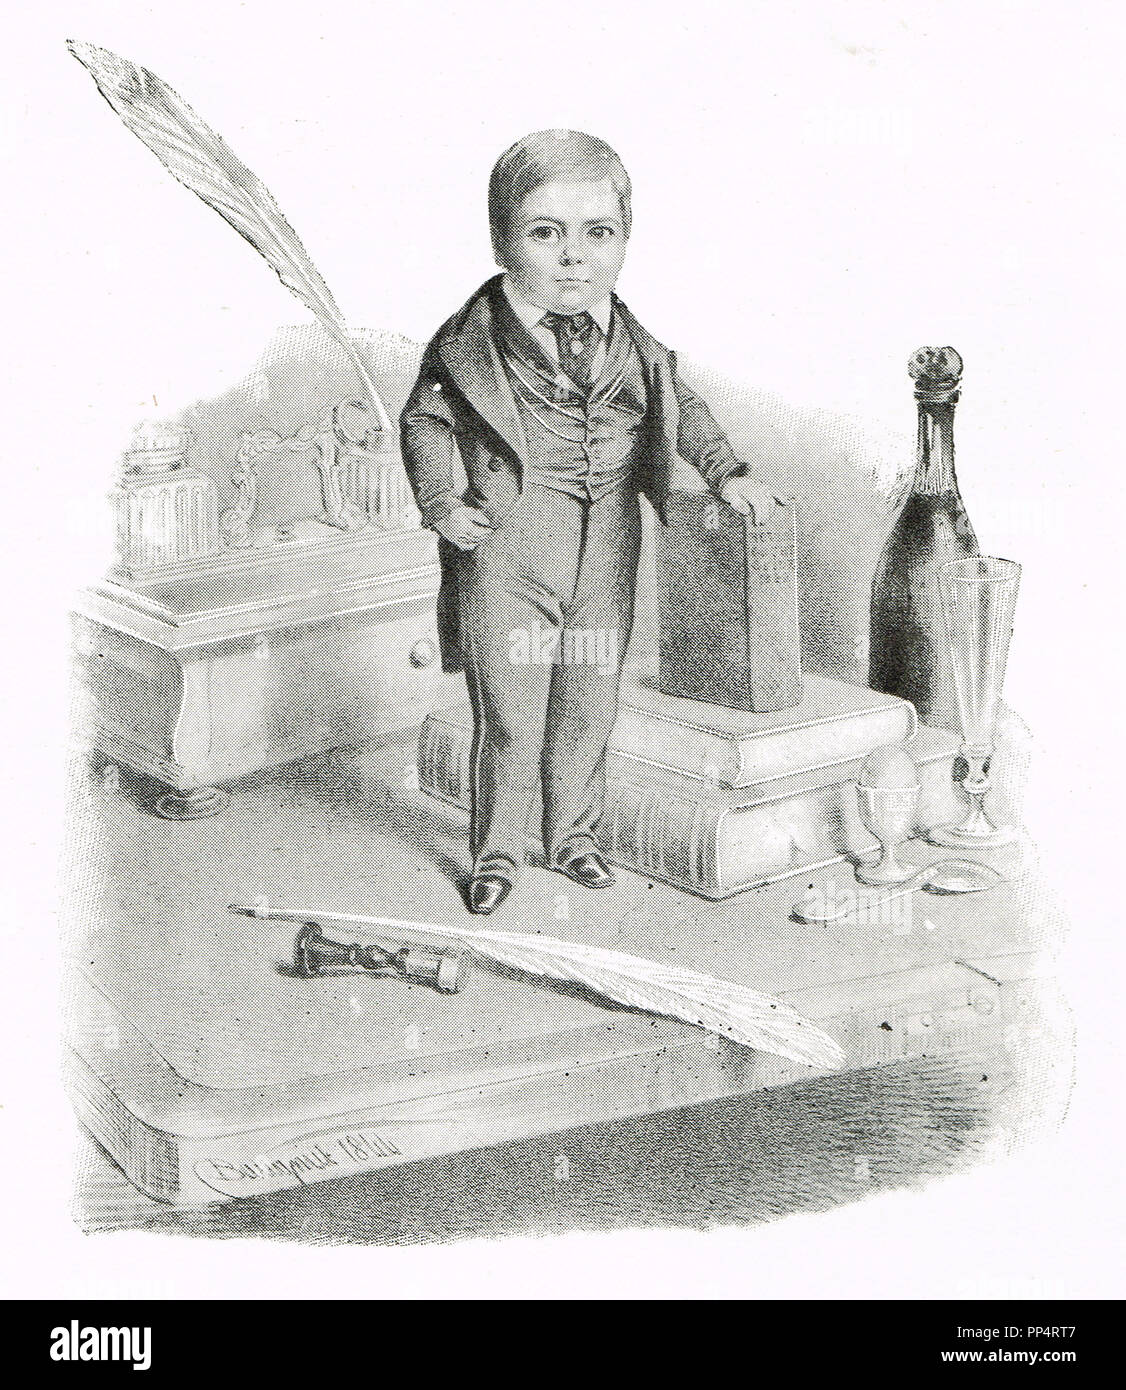 Charles Sherwood Stratton, meglio noto con il suo nome di fase Generale Tom Thumb, nel 1844, in occasione di una visita alla regina Victoria Foto Stock